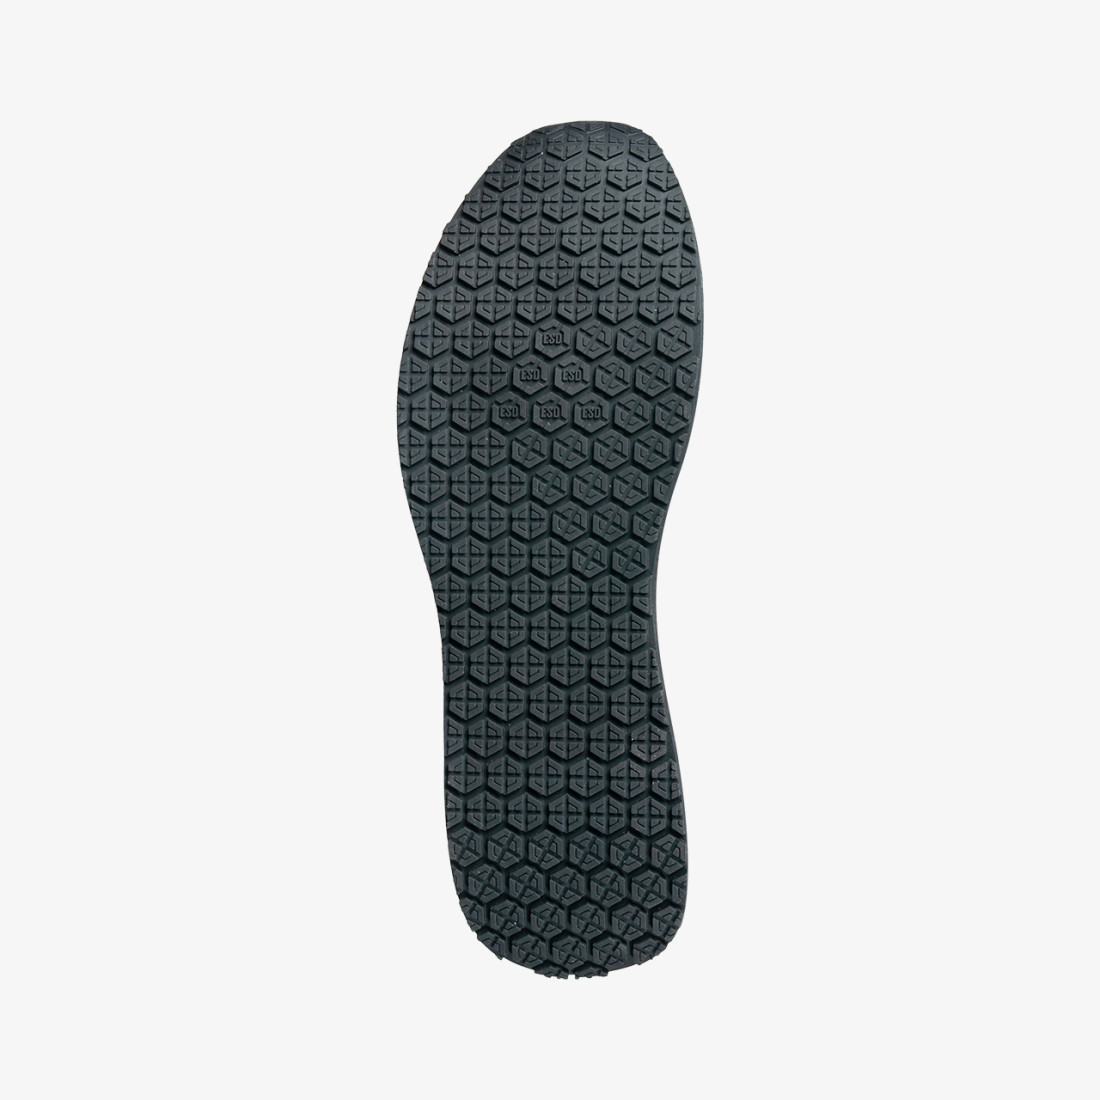 Adidasi unisex DOMINIQUE O1 - Incaltaminte de protectie | Bocanci, Pantofi, Sandale, Cizme